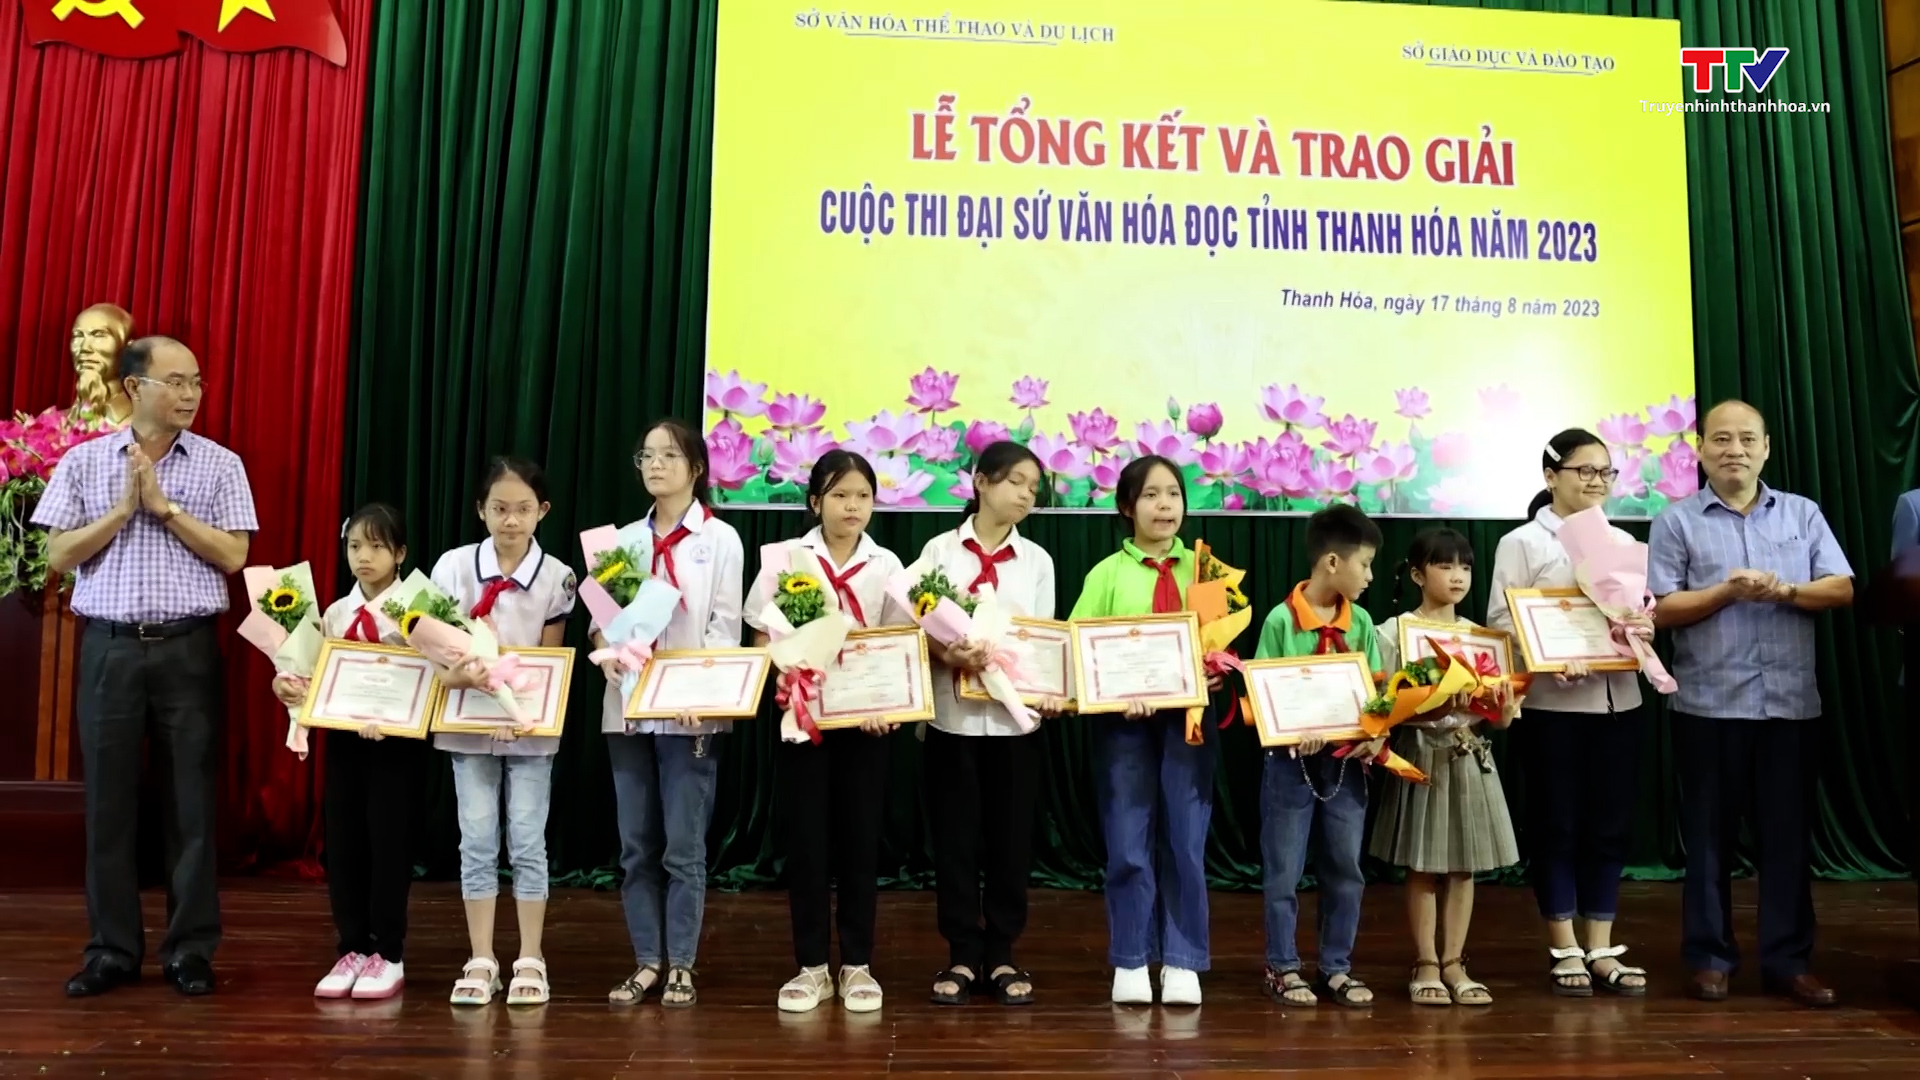 Tổng kết và trao giải cuộc thi “Đại sứ văn hóa đọc Tỉnh Thanh Hóa” năm 2023 - Ảnh 2.